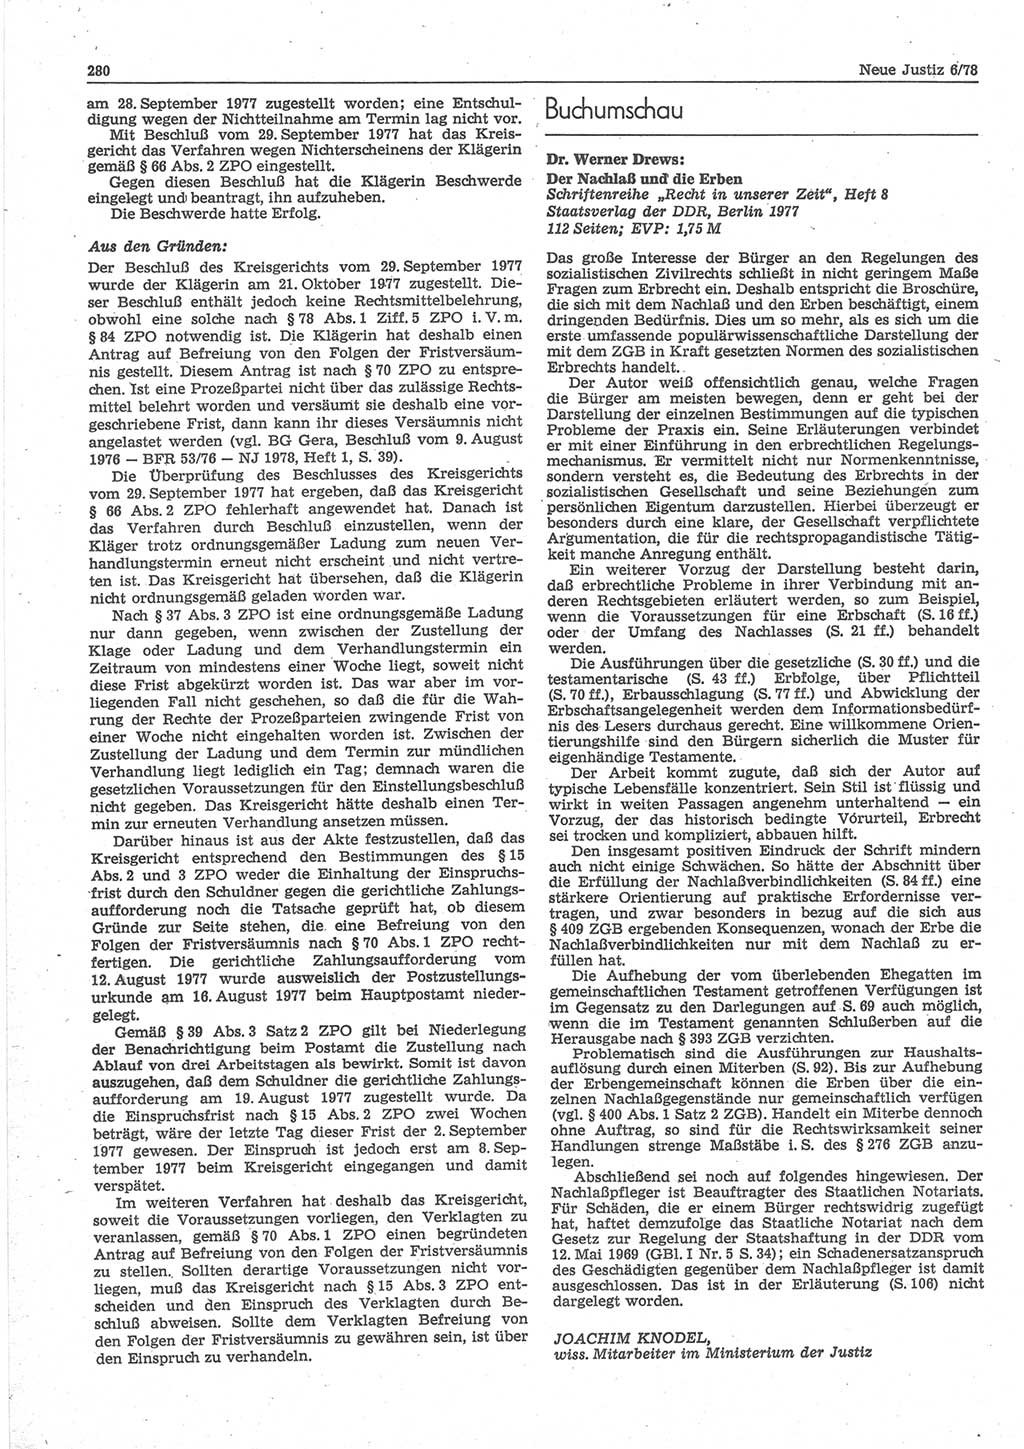 Neue Justiz (NJ), Zeitschrift für sozialistisches Recht und Gesetzlichkeit [Deutsche Demokratische Republik (DDR)], 32. Jahrgang 1978, Seite 280 (NJ DDR 1978, S. 280)